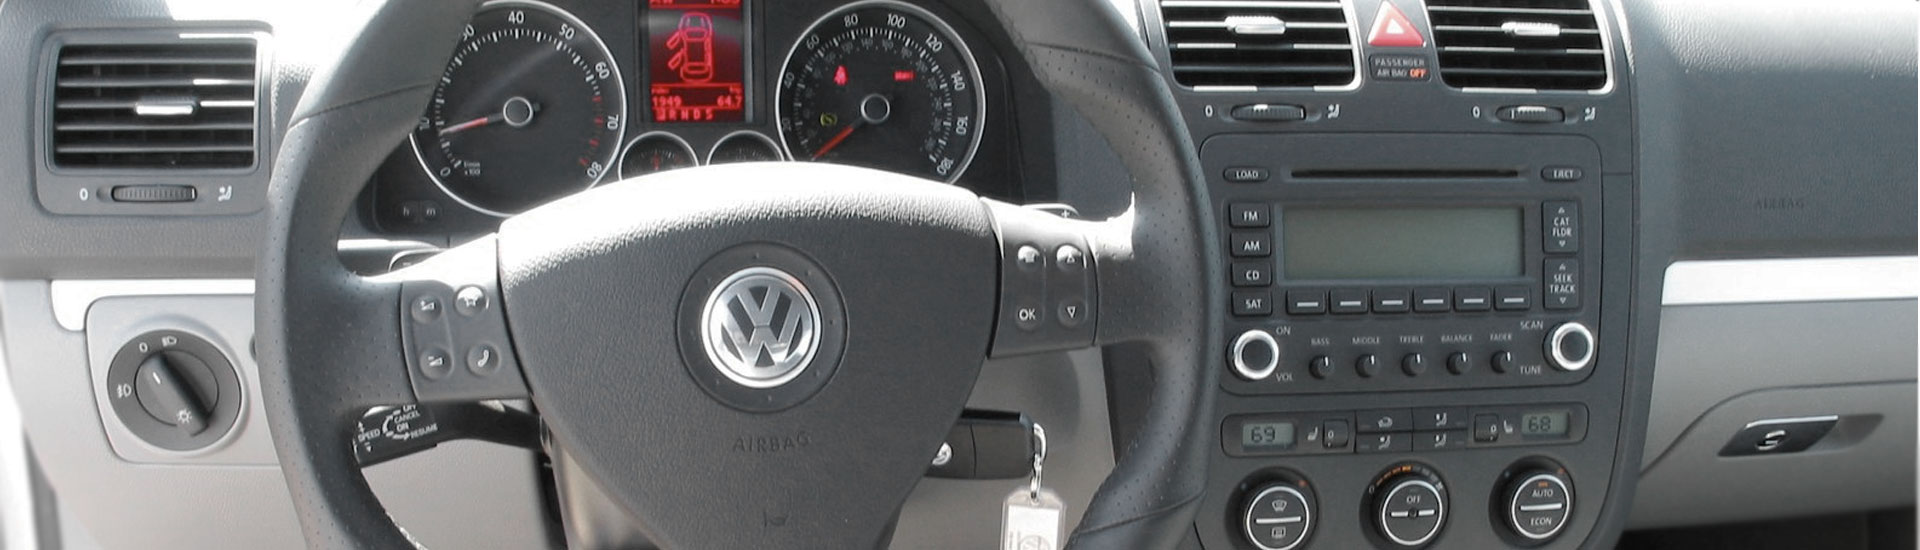 Volkswagen GLI Custom Dash Kits